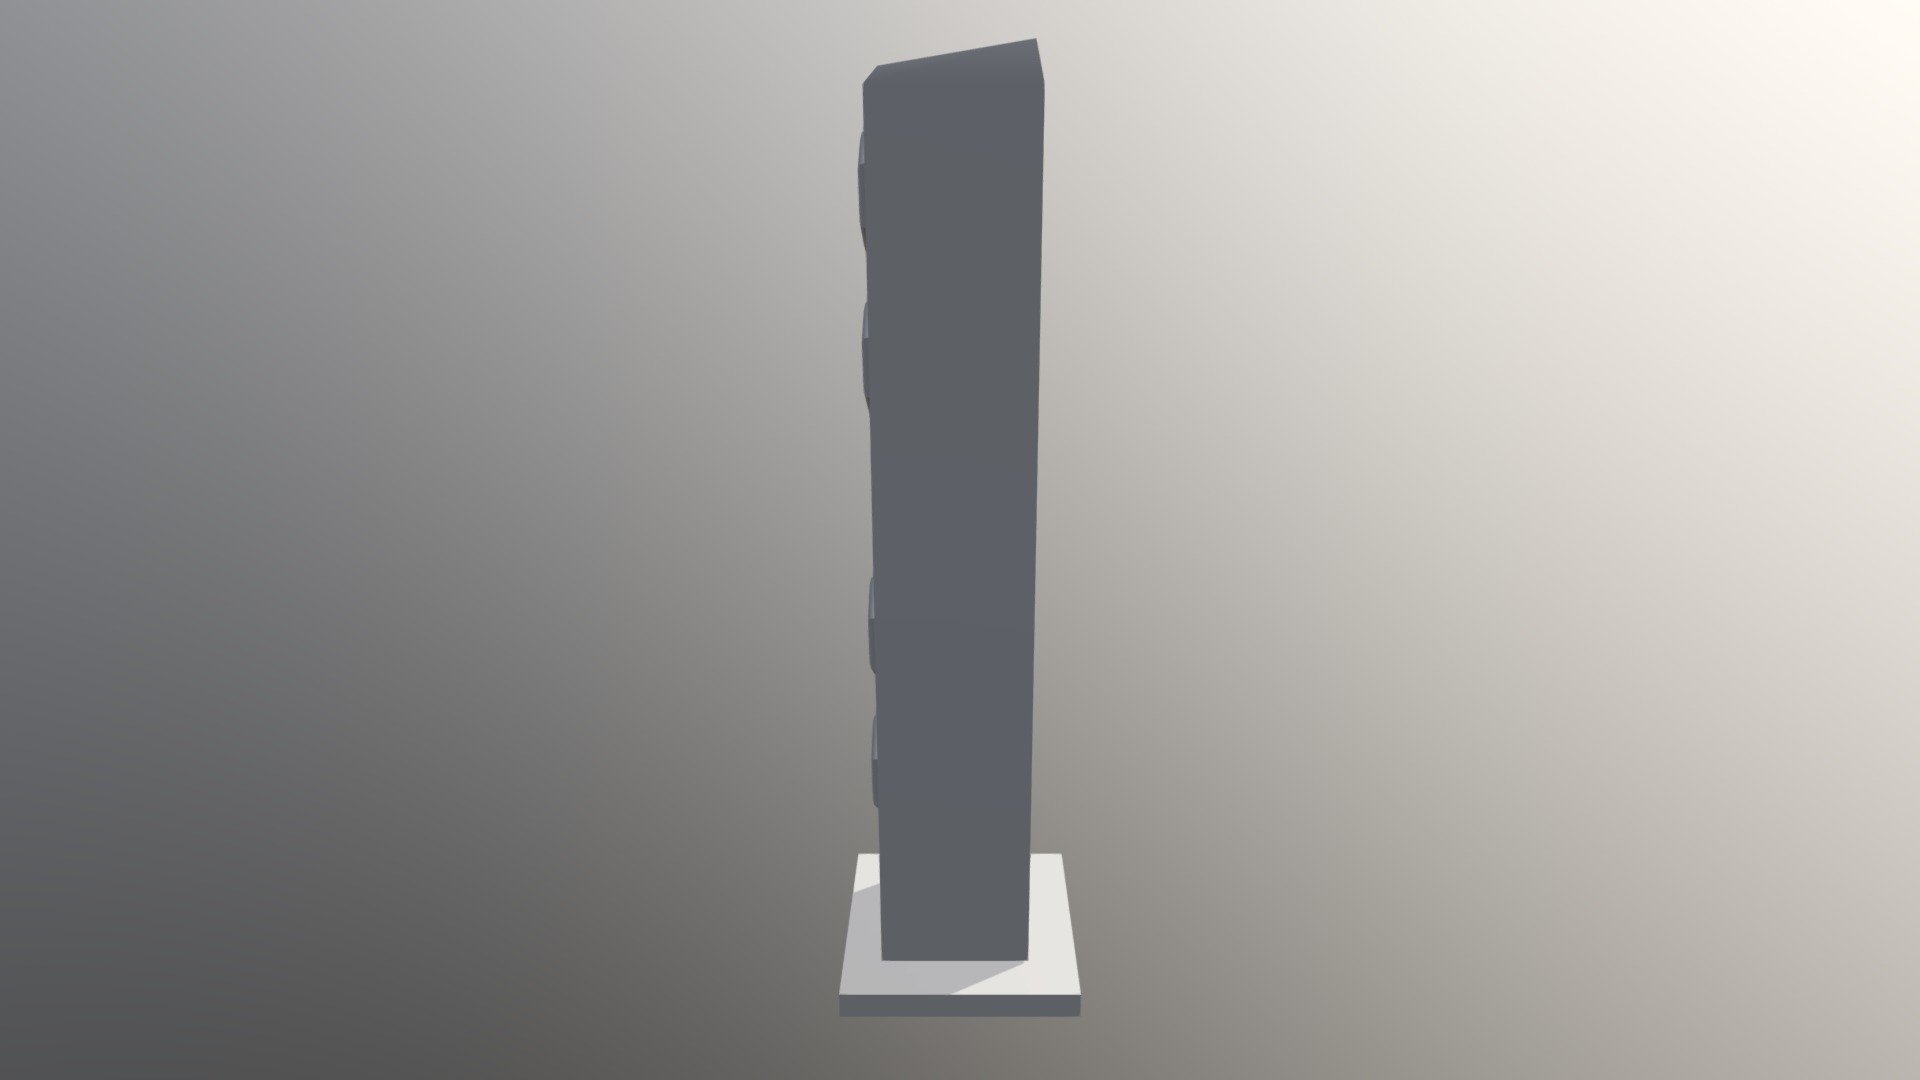 Speaker - 3D model by MrTheFly [929fd76] - Sketchfab